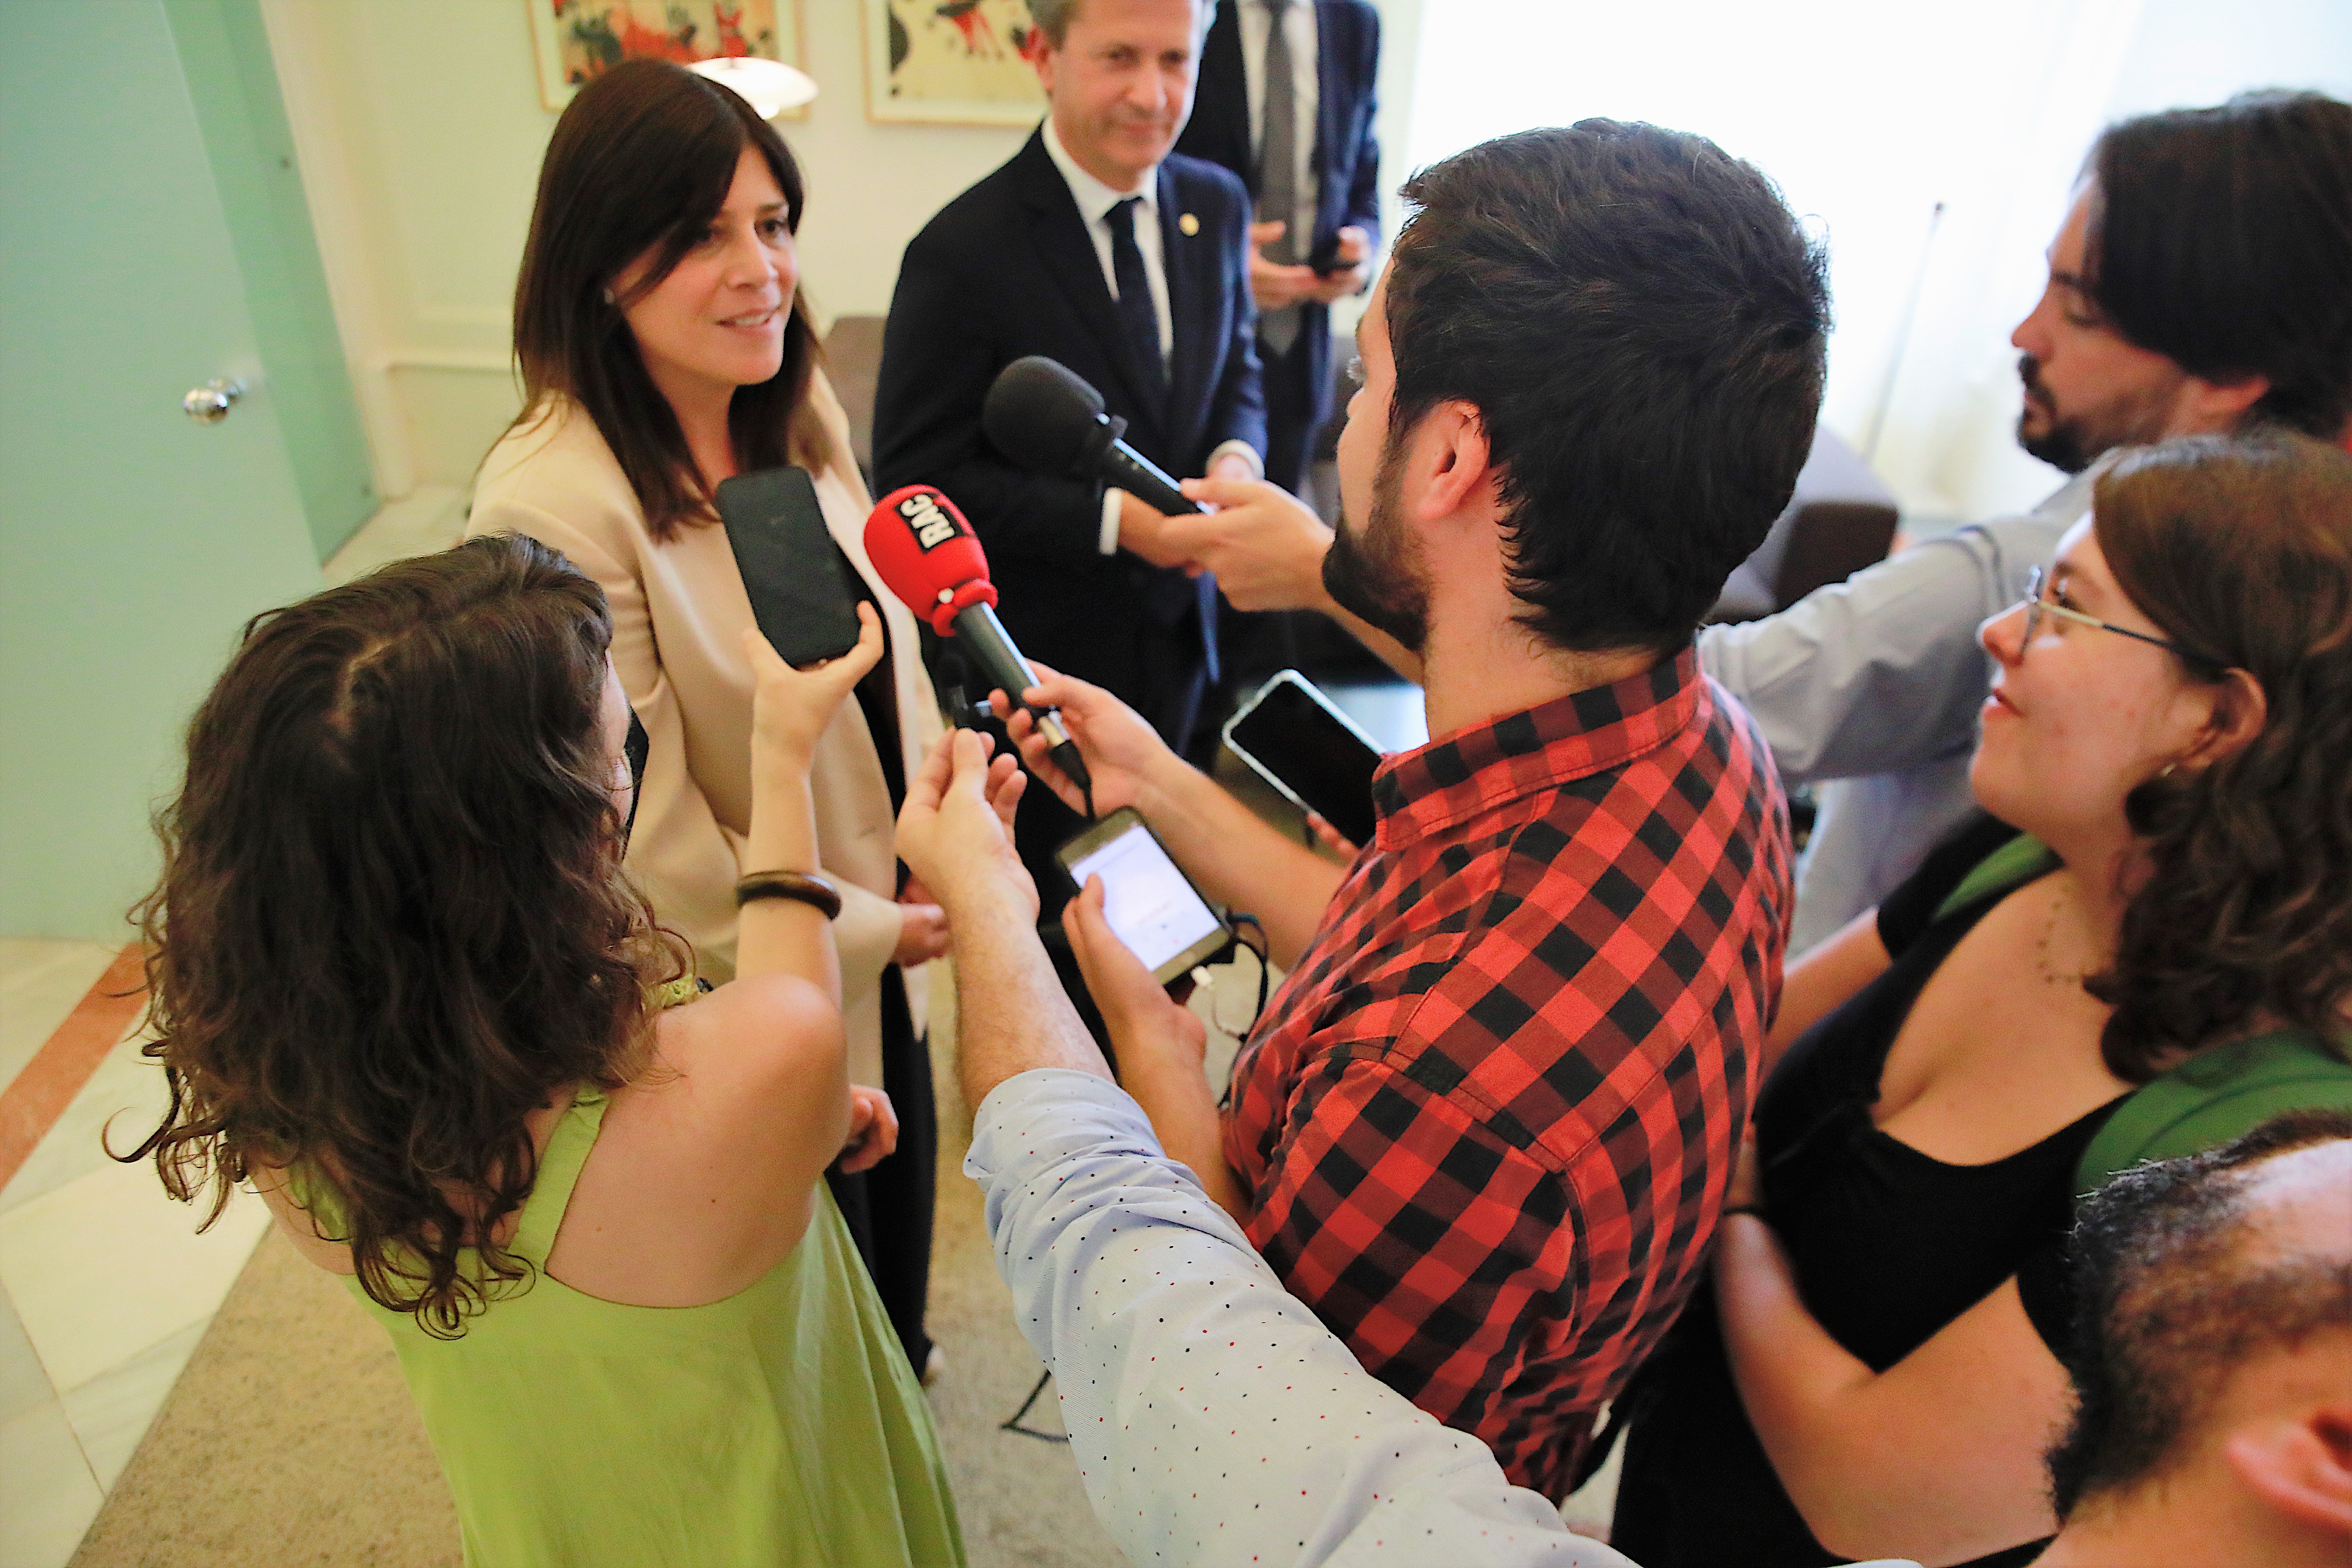 La consellera Geis atén als mitjans de comunicació després de la reunió amb el conseller basc d'Educació